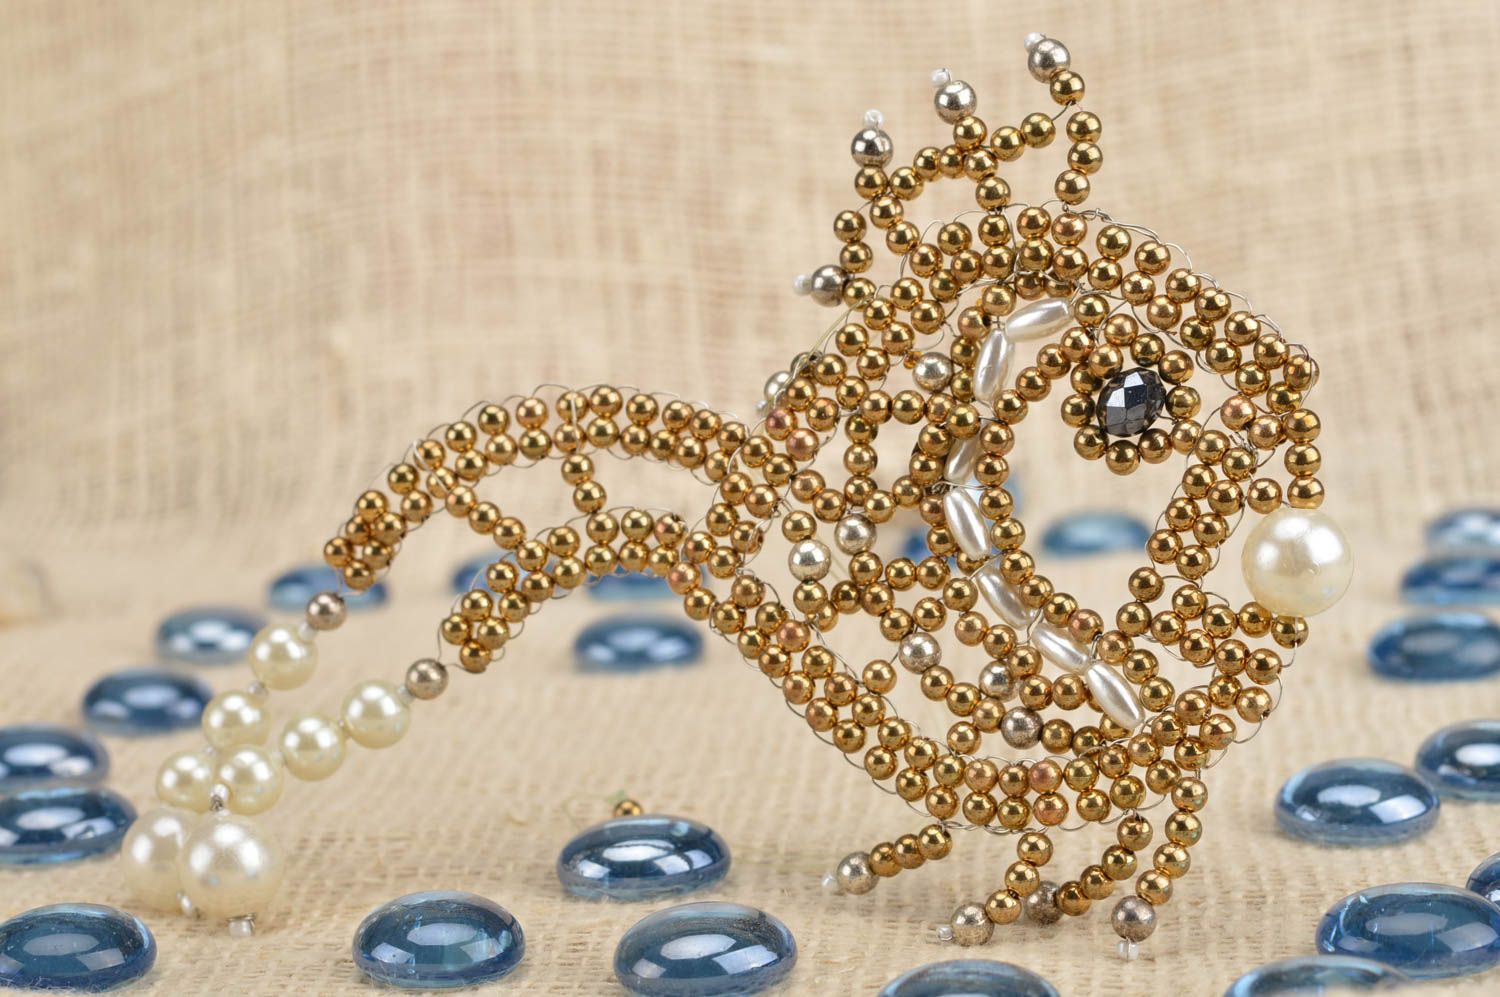 Декоративный элемент из бисера настенная подвеска ручной работы Золотая рыбка фото 1